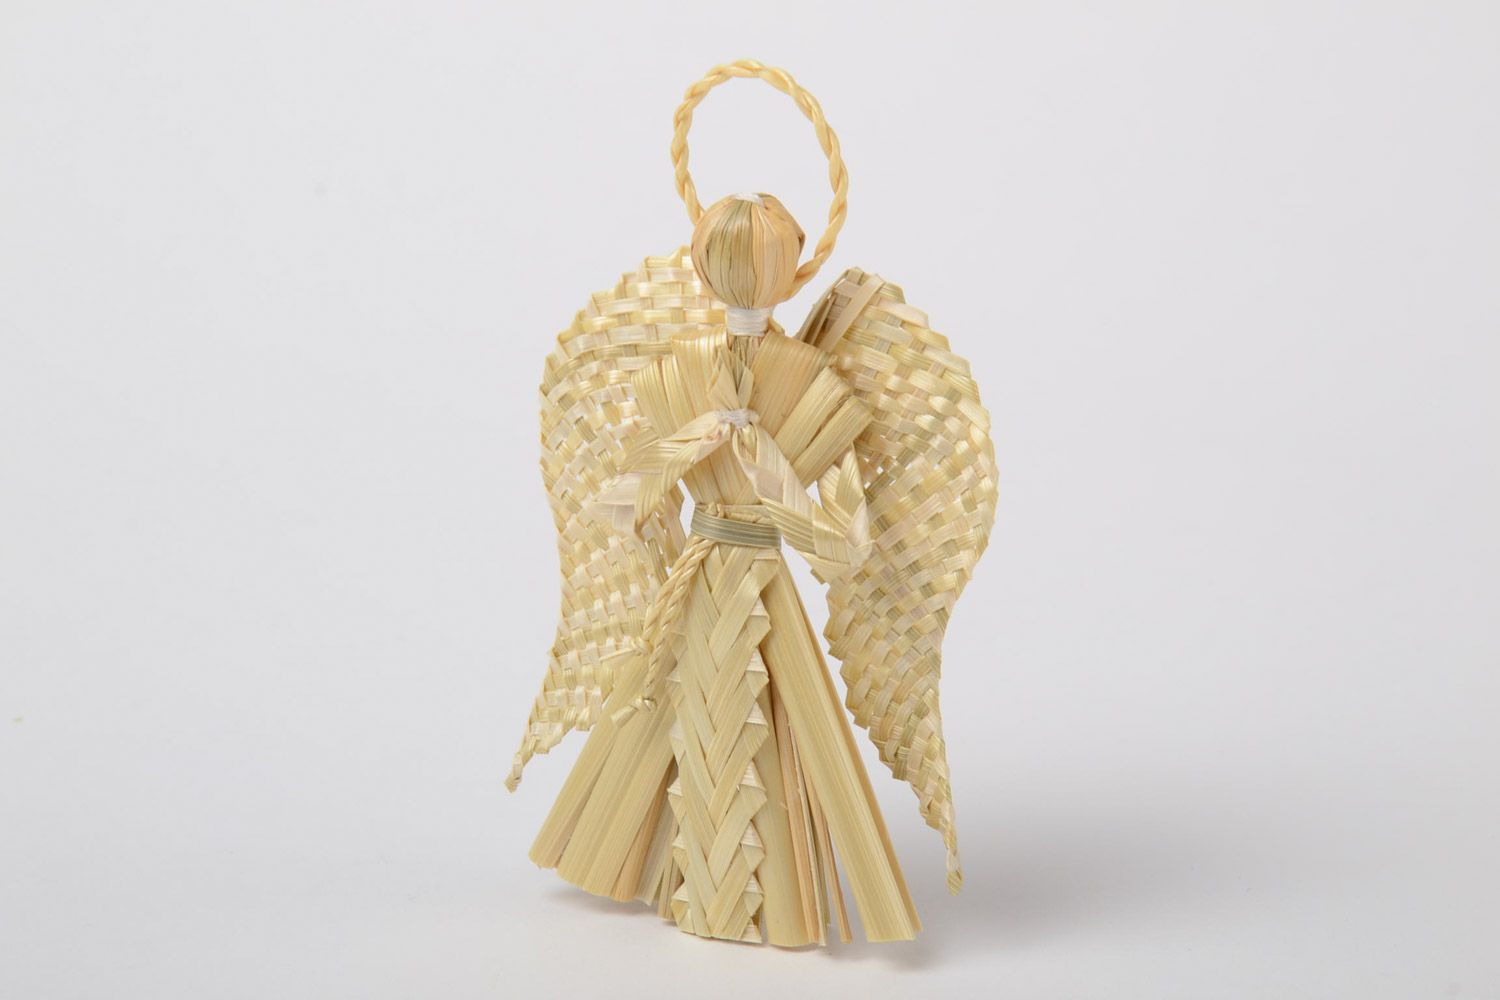 Suspension décorative Ange gardien figurine originale en paille faite main photo 2